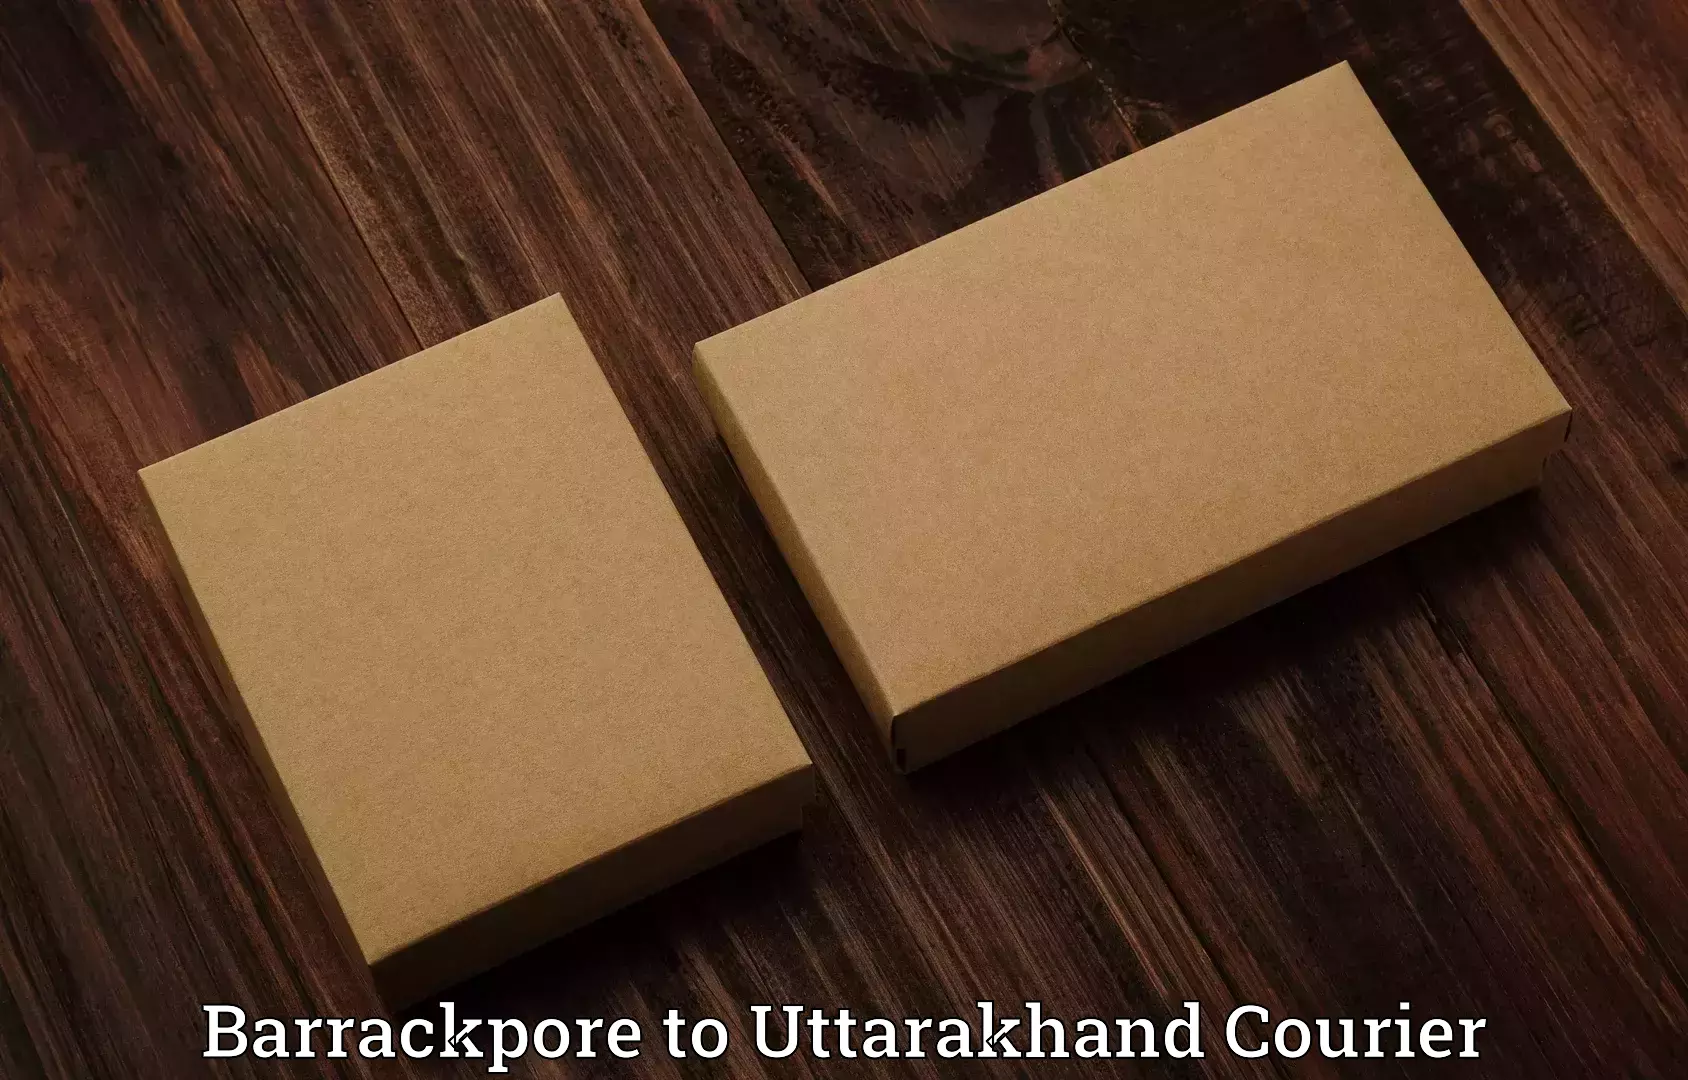 Hassle-free luggage shipping Barrackpore to Uttarakhand